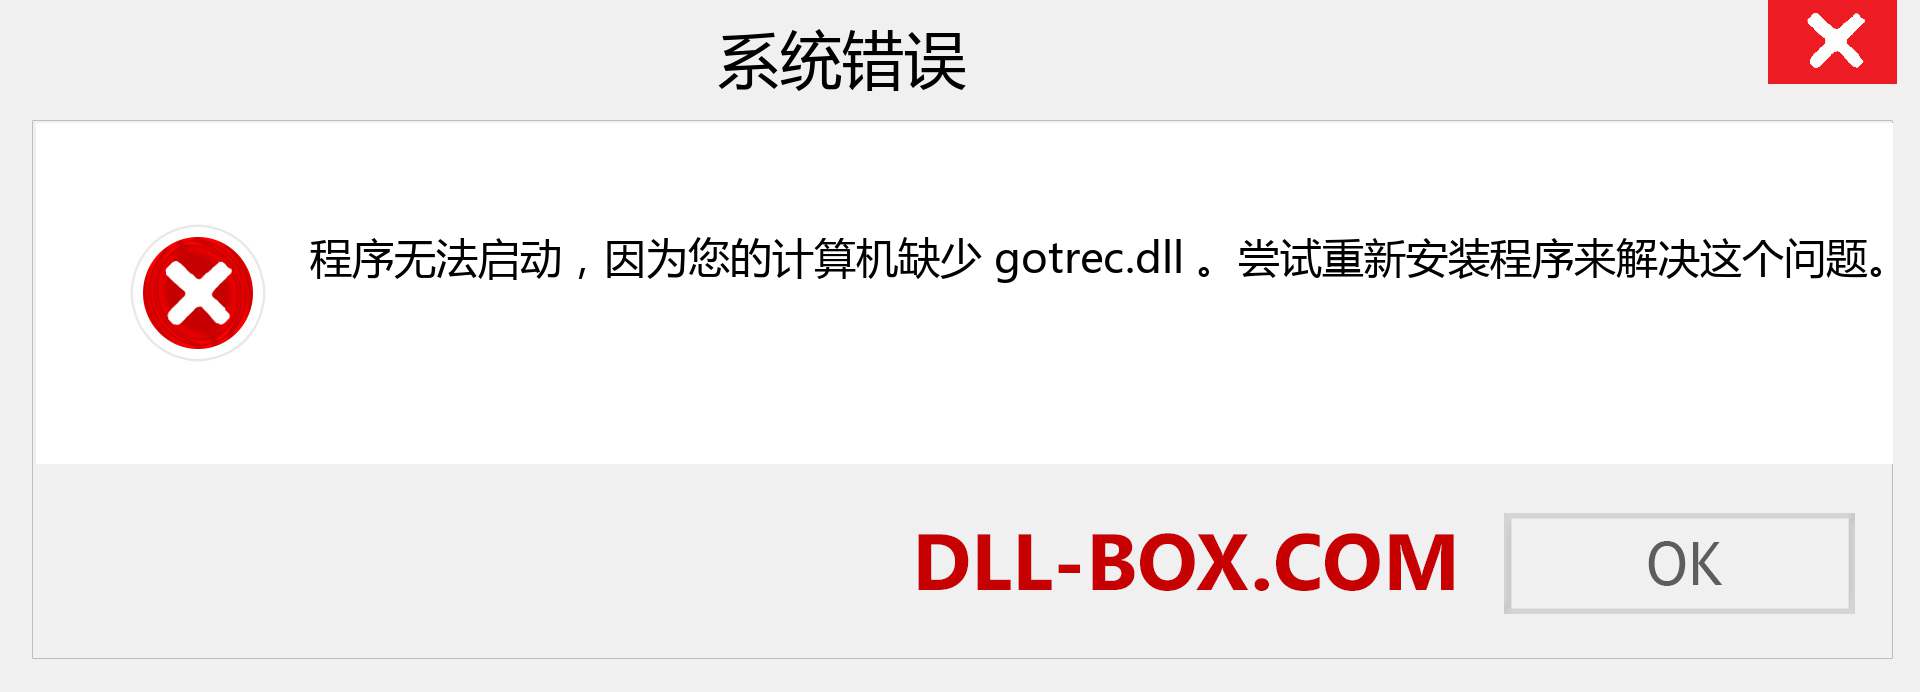 gotrec.dll 文件丢失？。 适用于 Windows 7、8、10 的下载 - 修复 Windows、照片、图像上的 gotrec dll 丢失错误